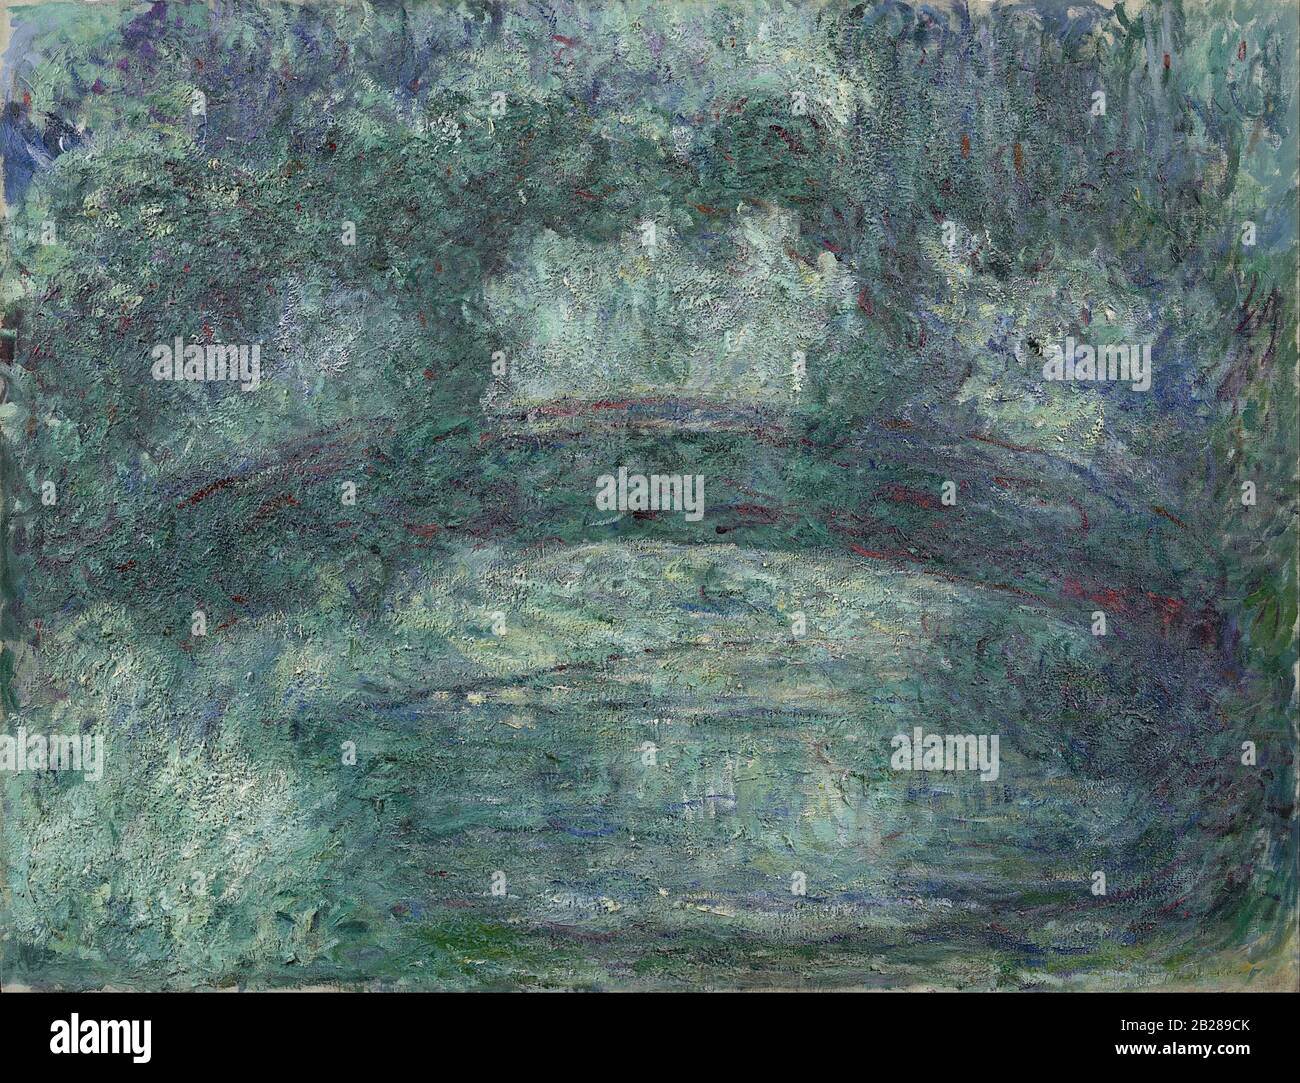 Il Ponte Giapponese (circa 1920) Pittura di Claude Monet - immagine Ad Altissima risoluzione e di qualità Foto Stock